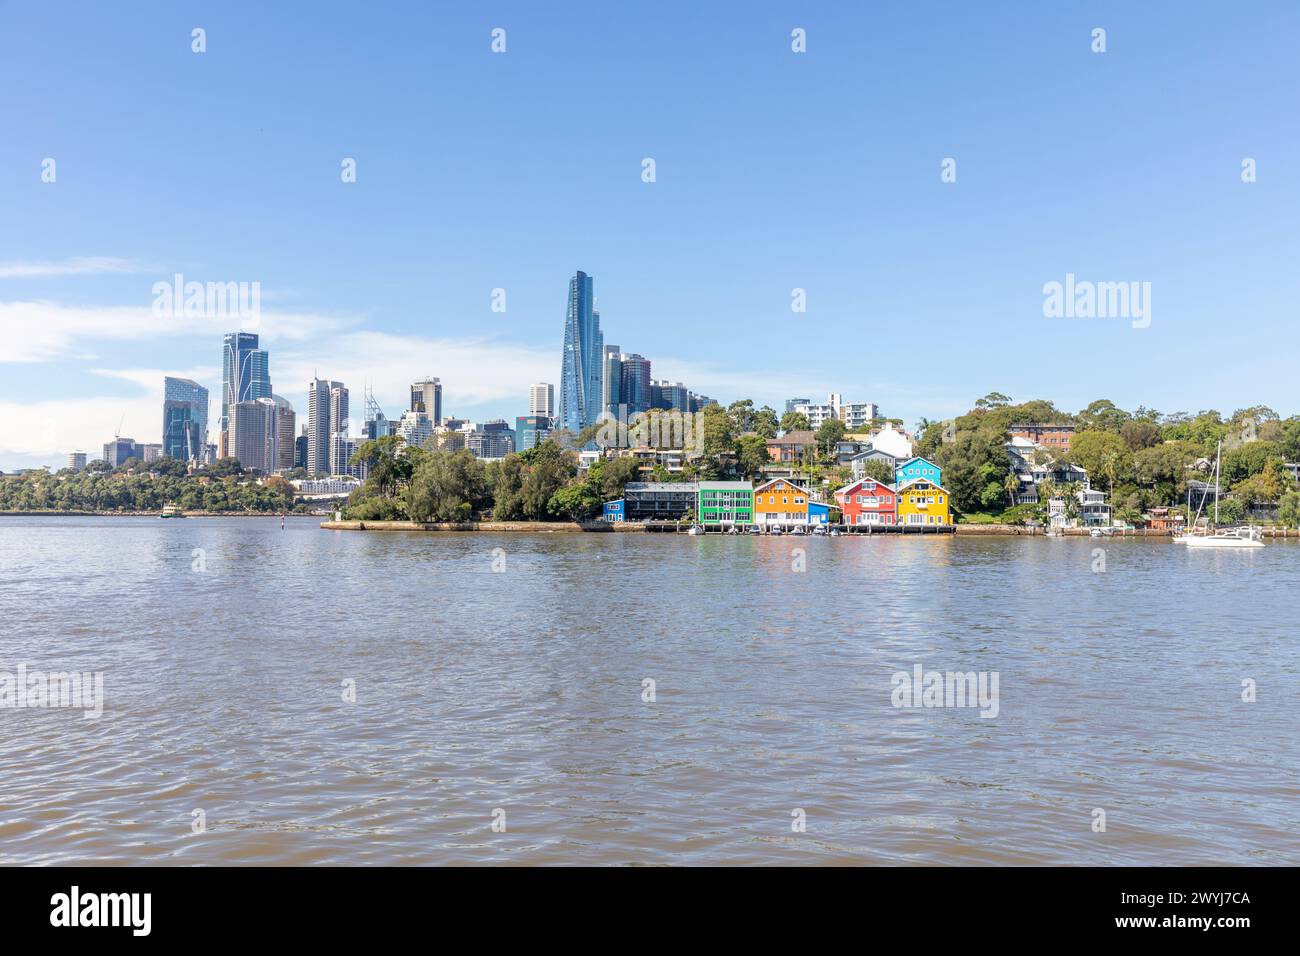 Penisola di Balmain e porto con vedute del paesaggio urbano del centro di Sydney con grattacieli alti, Sydney, NSW, Australia Foto Stock